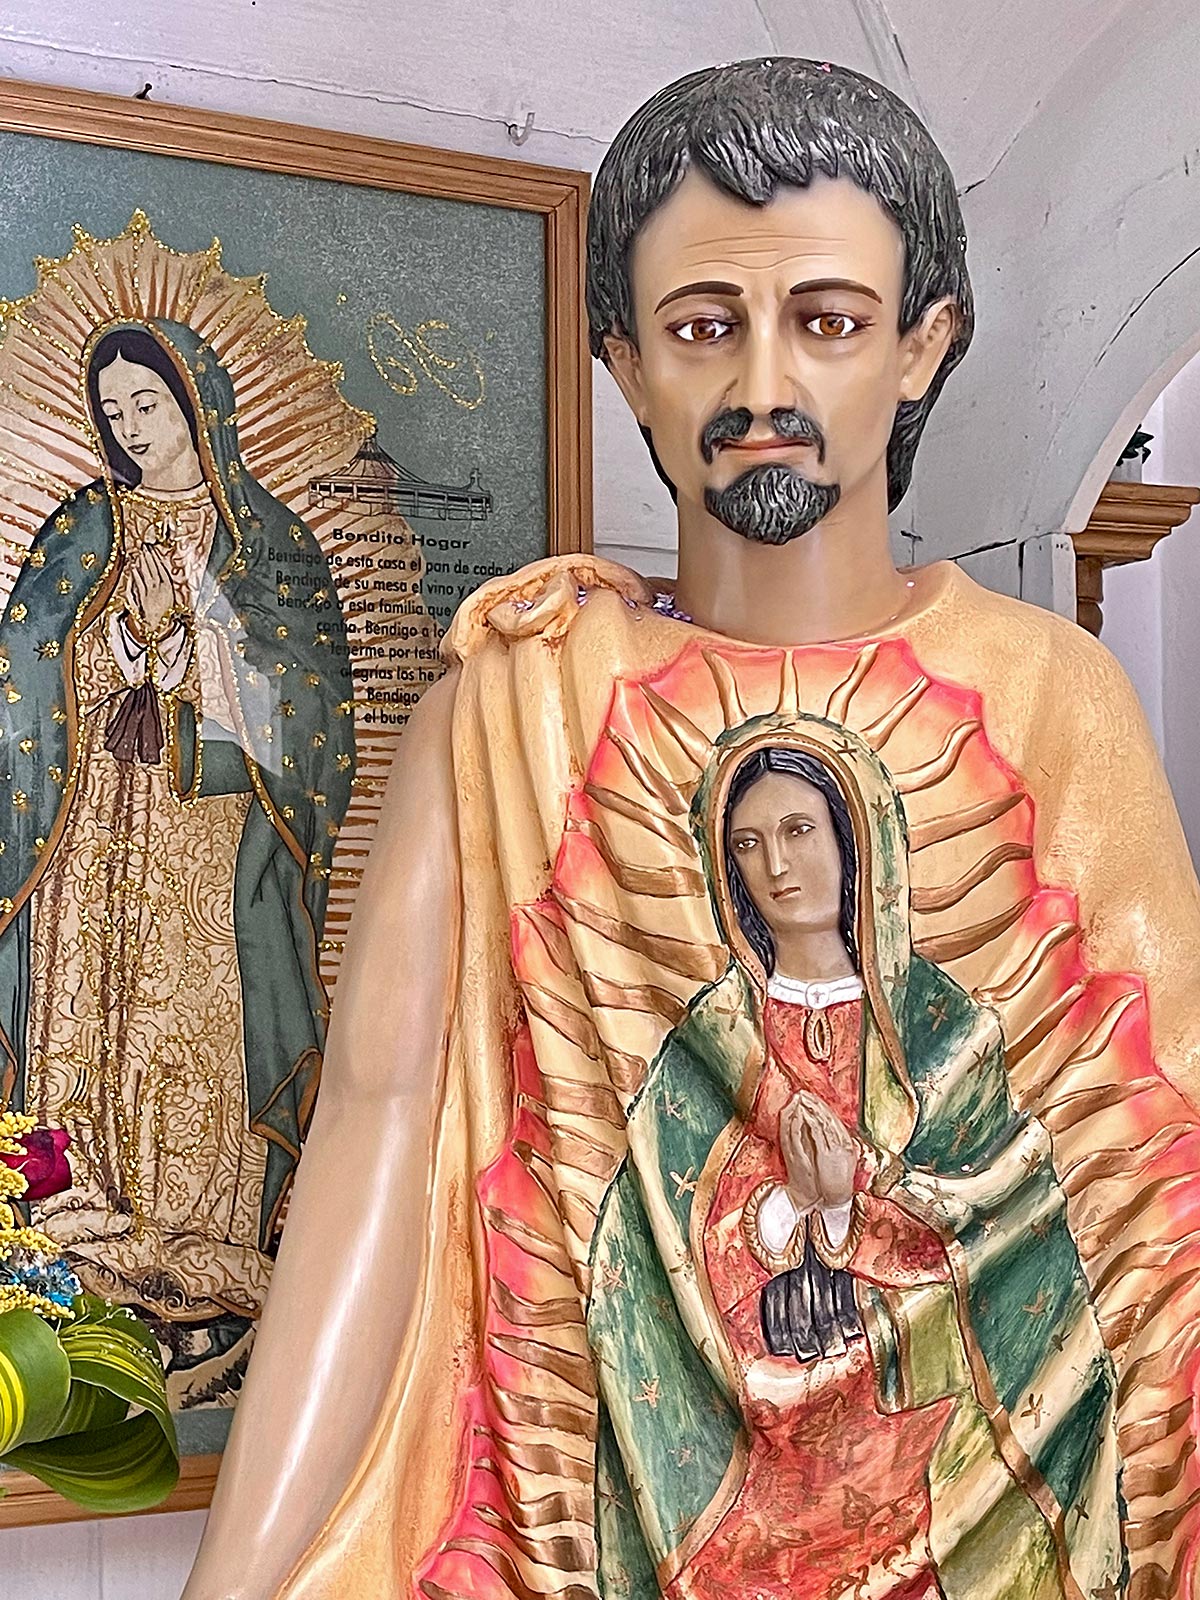 تمثال خوان دييغو مع صورة معجزة لمريم مطبوع على عباءته القماشية ، كنيسة غوادالوبي ، سان كريستوبال